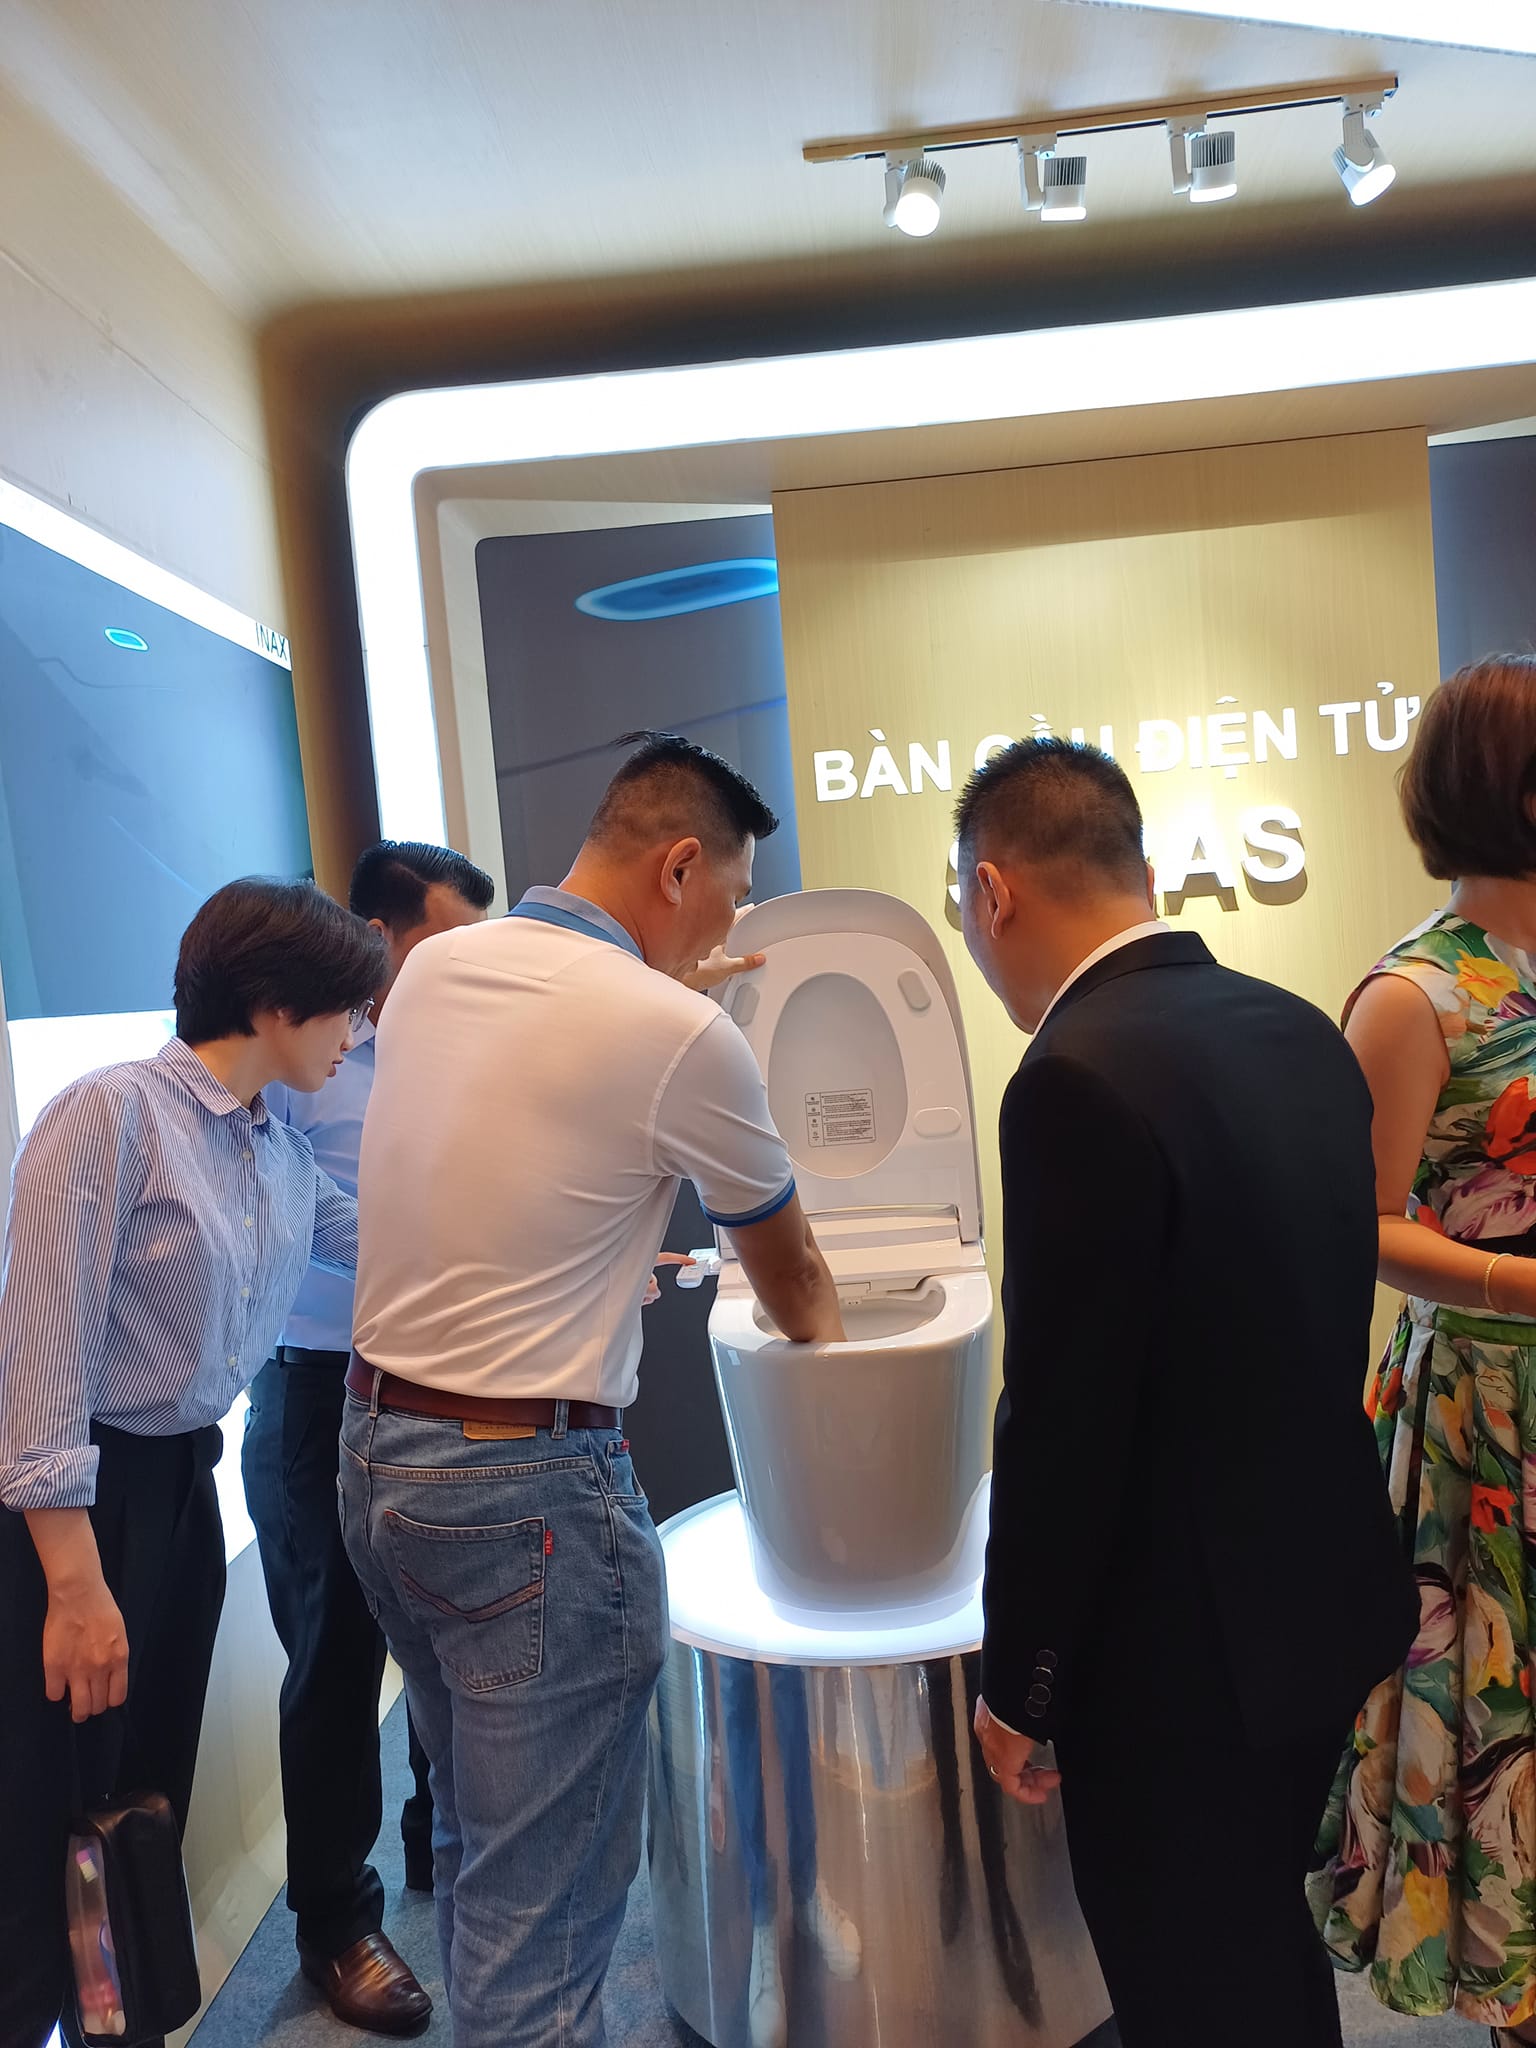 Công ty Lộc Nghi tham dự sự kiện ra mắt Bồn cầu điện tử INAX thế hệ mới SARAS